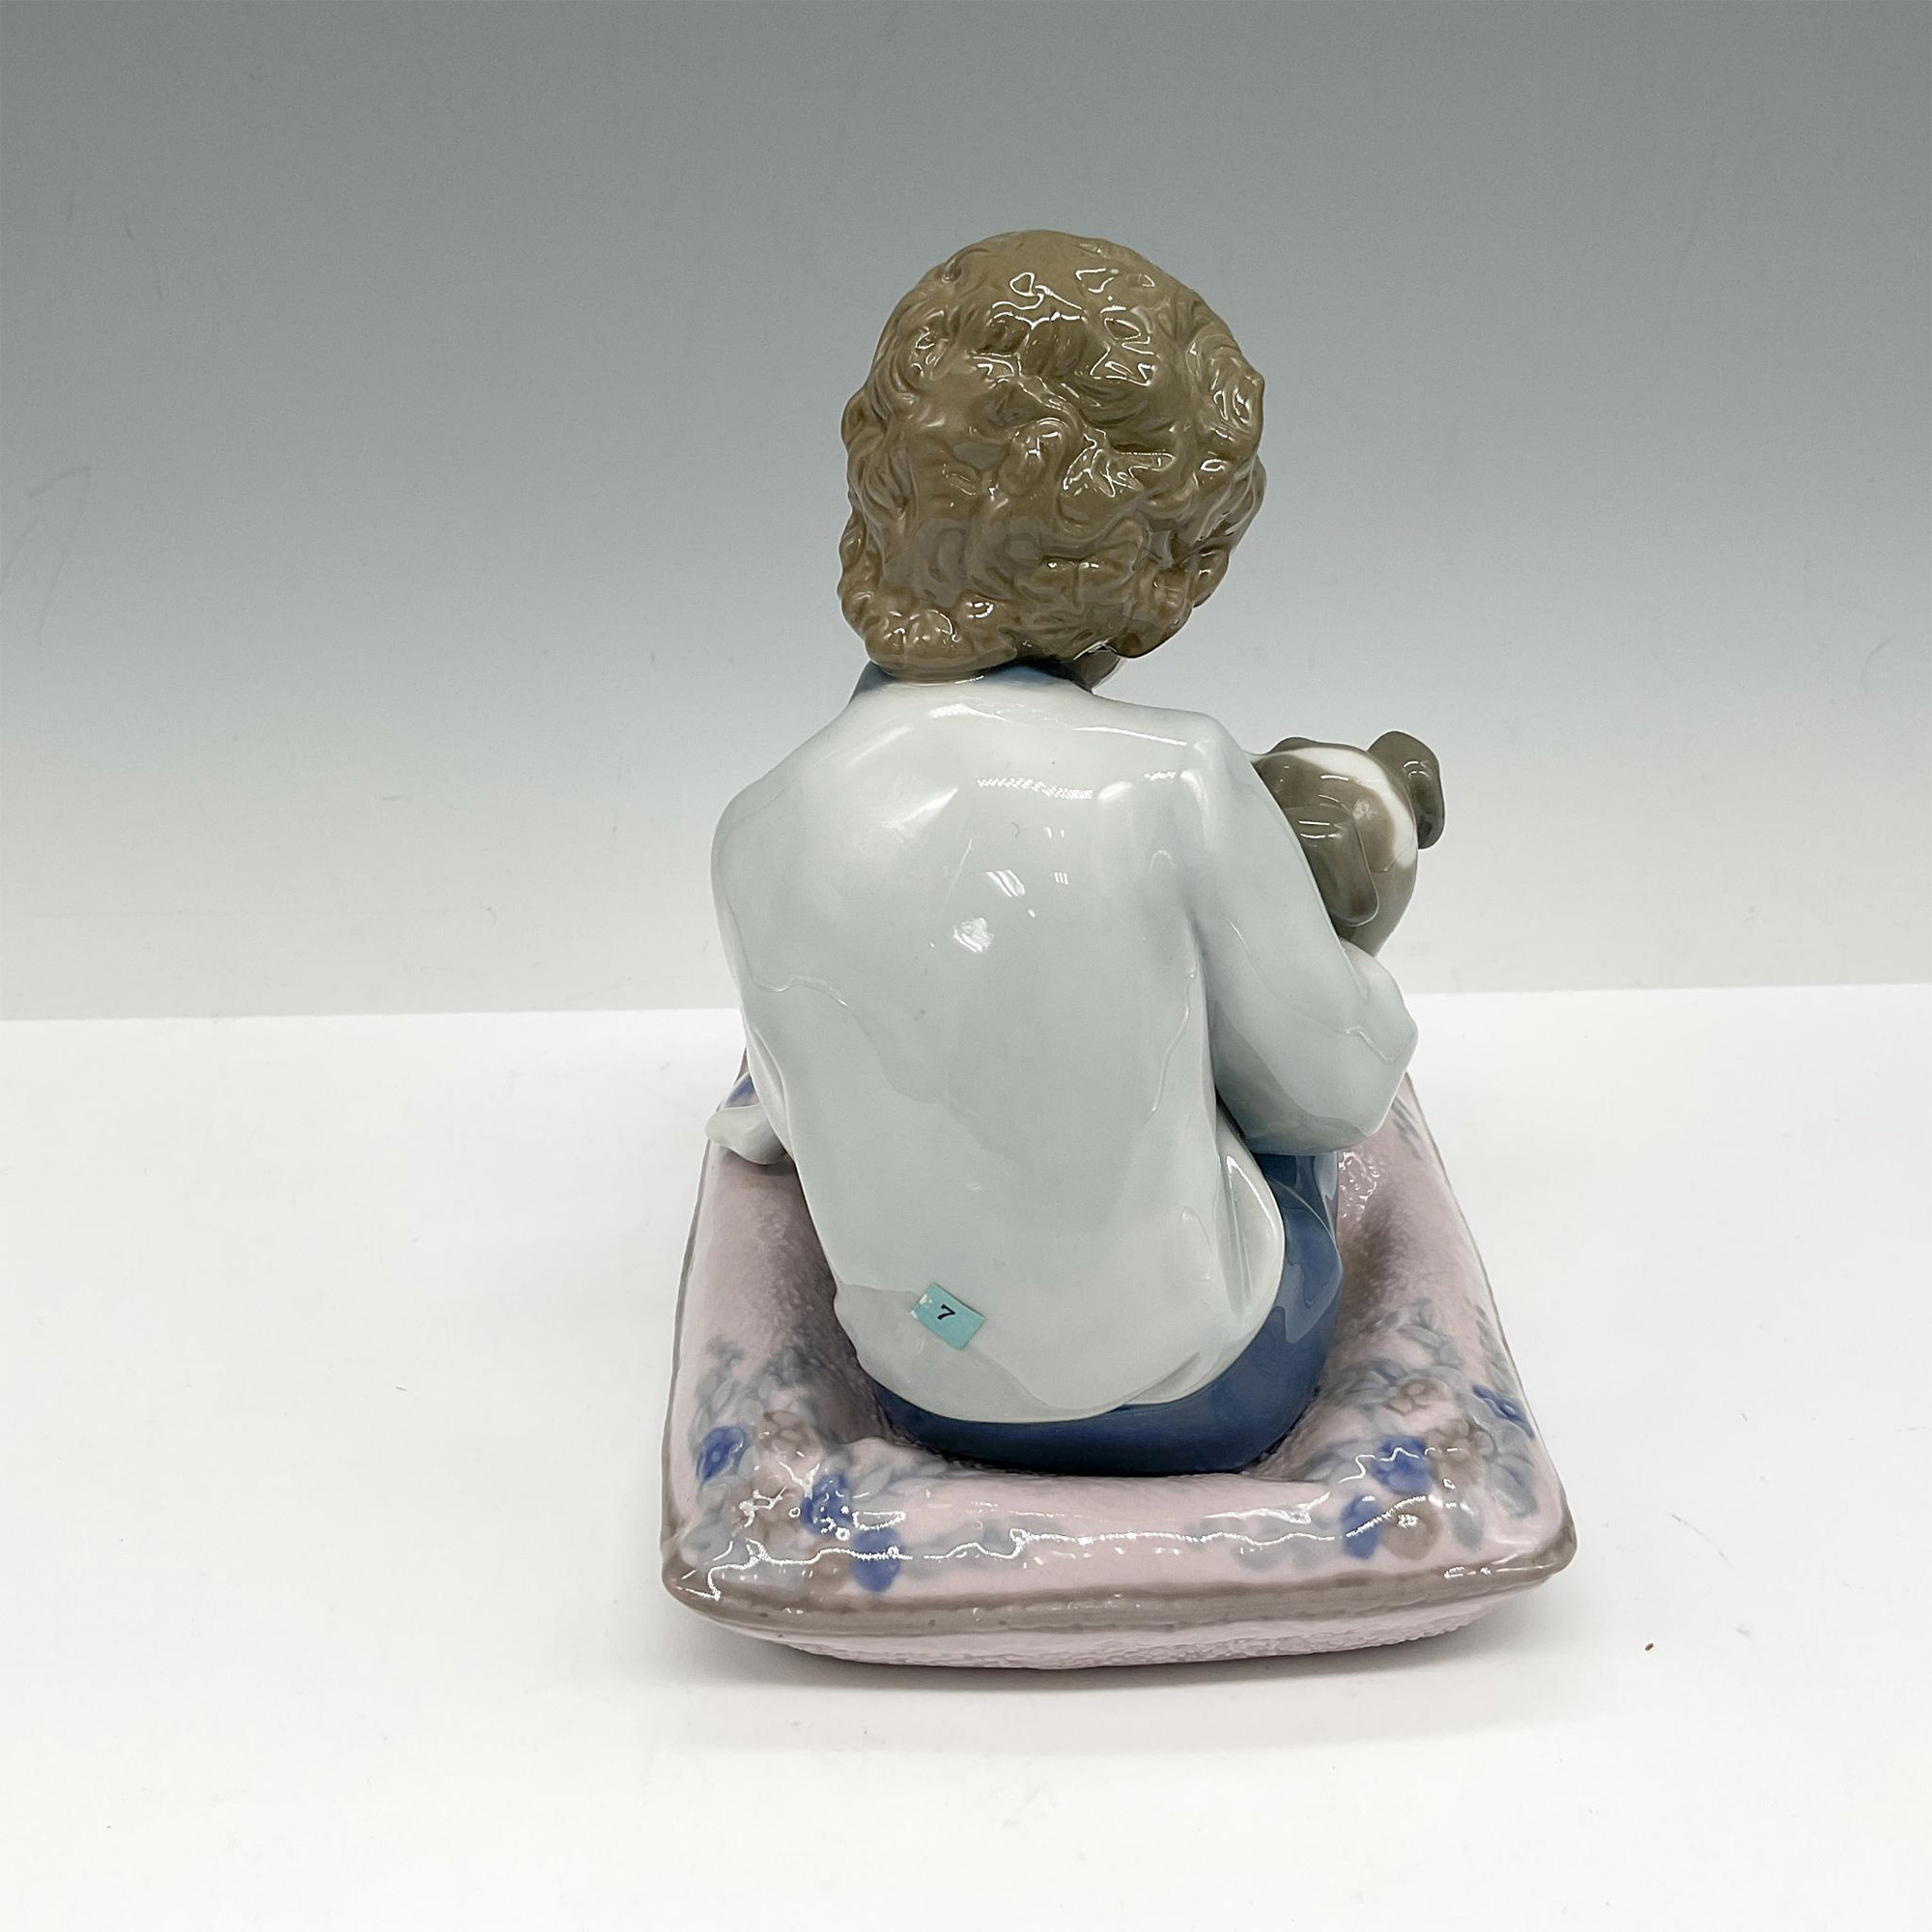 Behave! 1005703 - Lladro Porcelain Figurine - Image 2 of 4